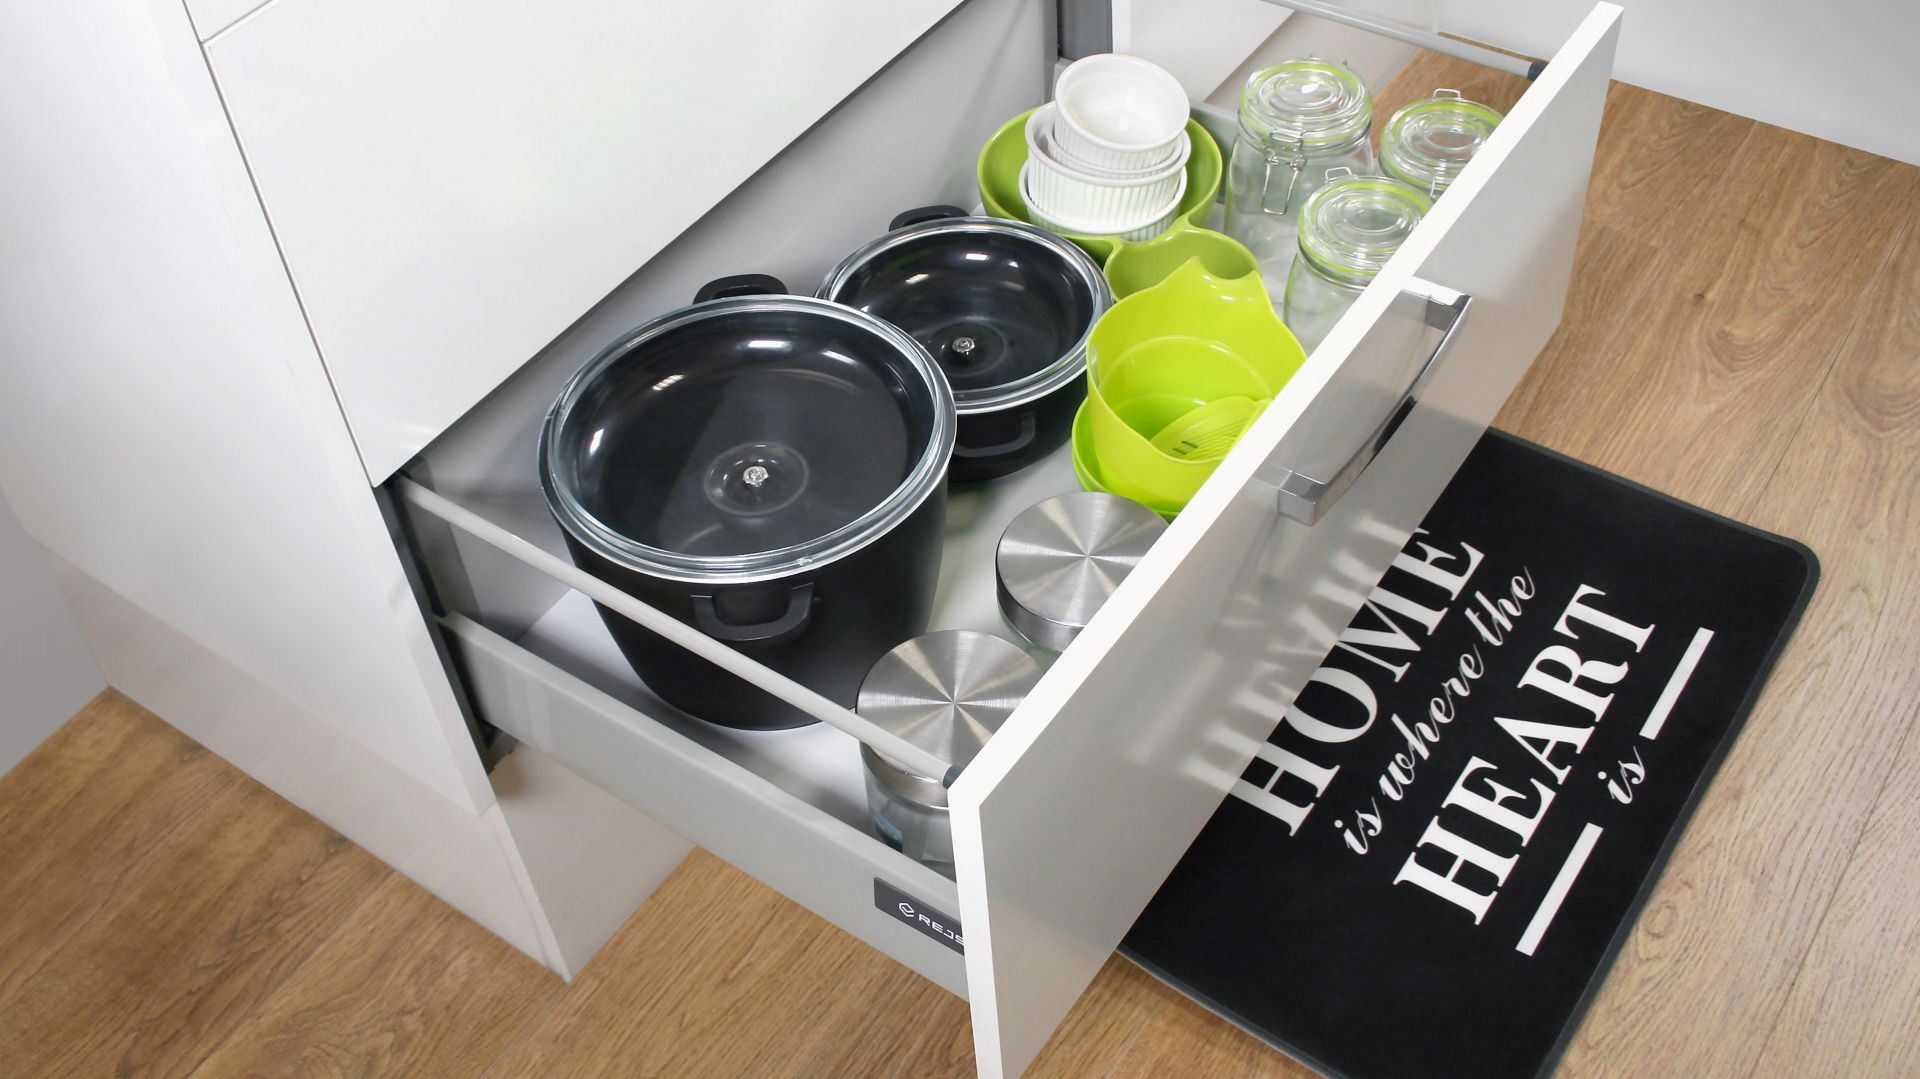 Przechowywanie w kuchni: wybierz praktyczne szuflady